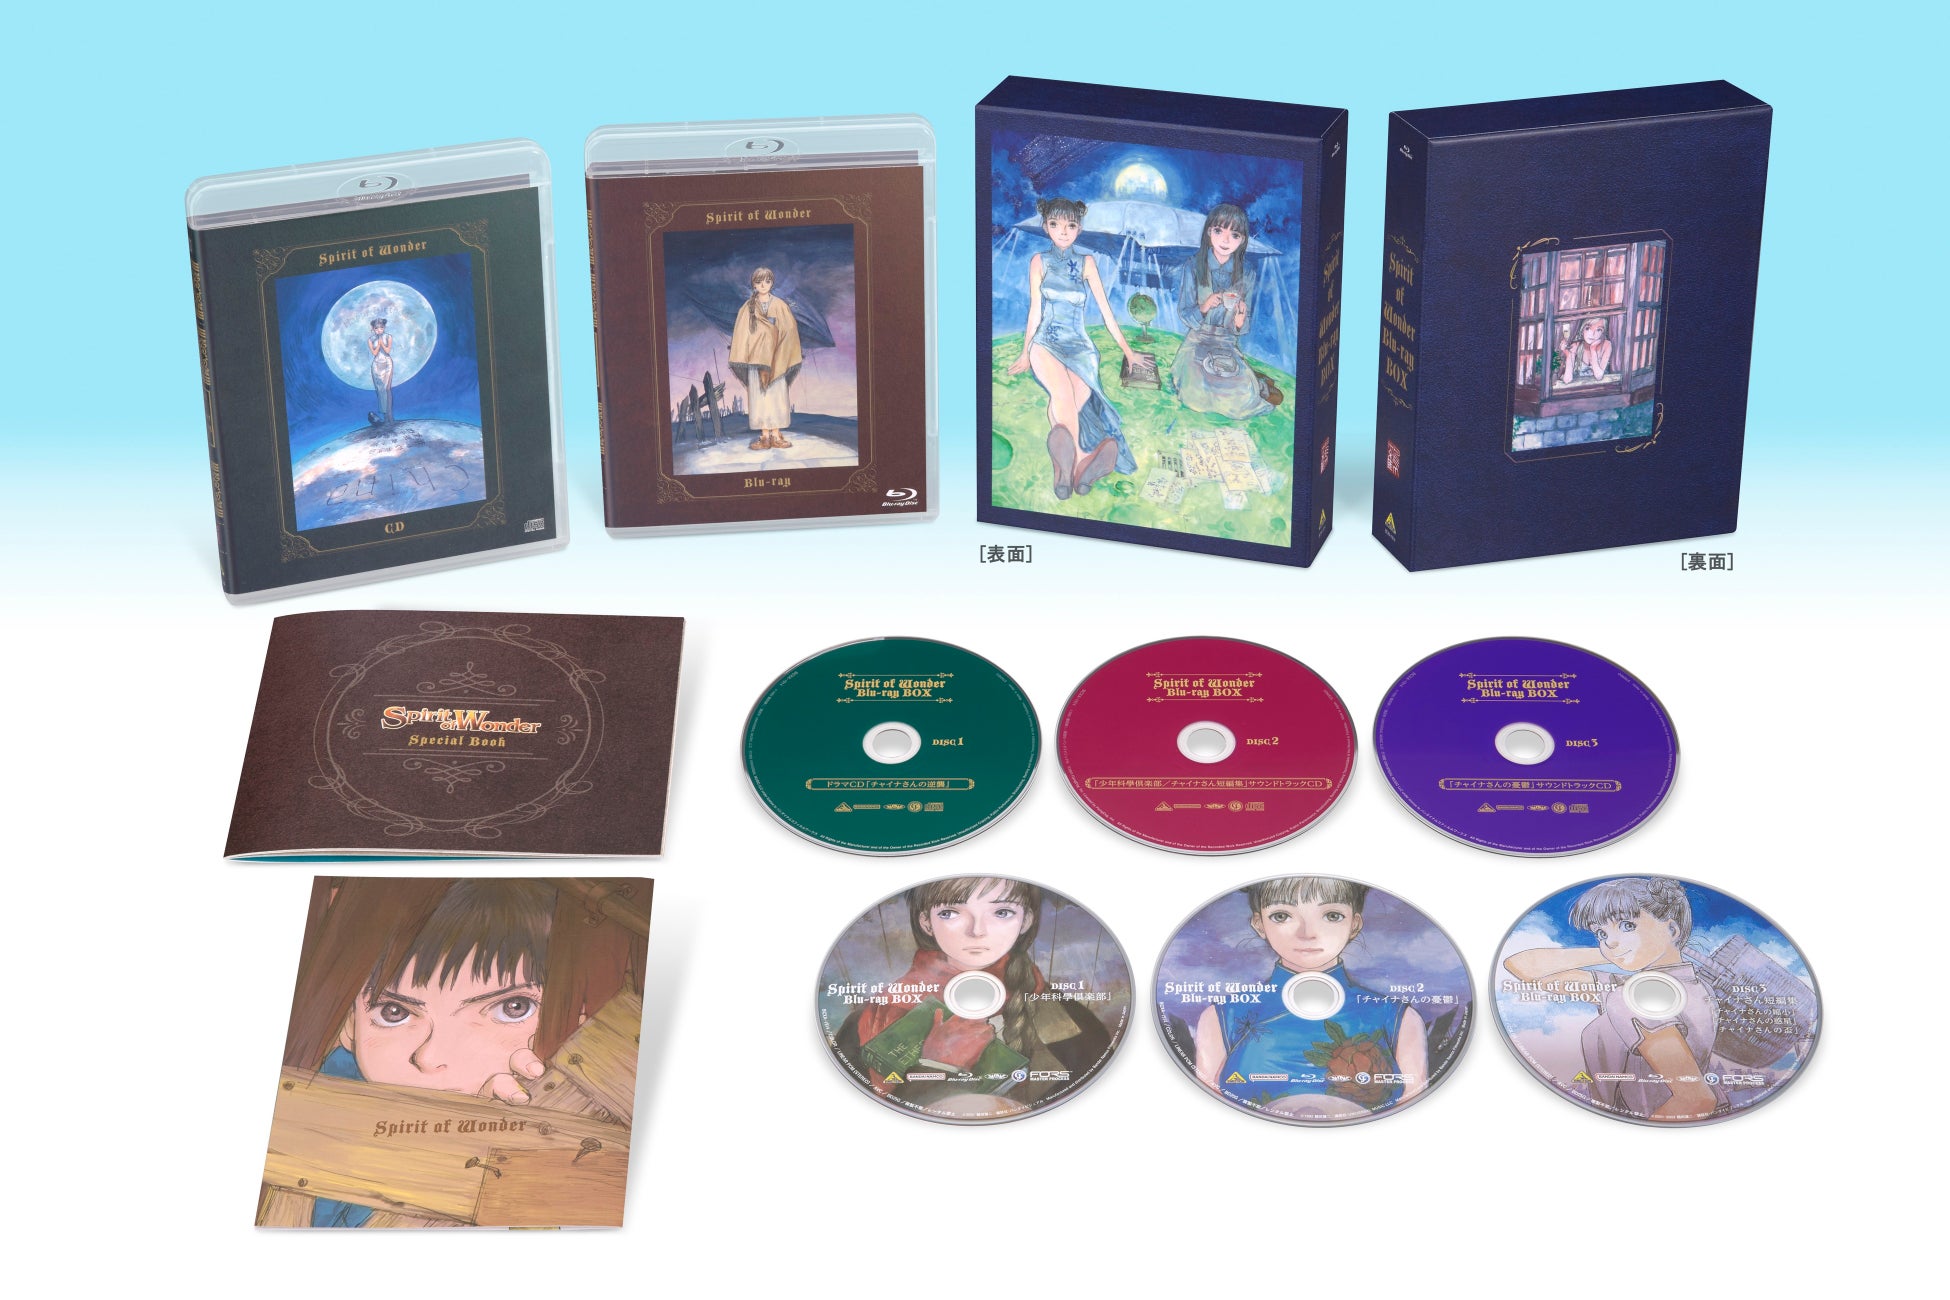 鶴田謙二原作のハートフルSFファンタジー『Spirit of Wonder』を初のBlu-ray化！「Spirit of Wonder　Blu-ray BOX」を3月27日に発売